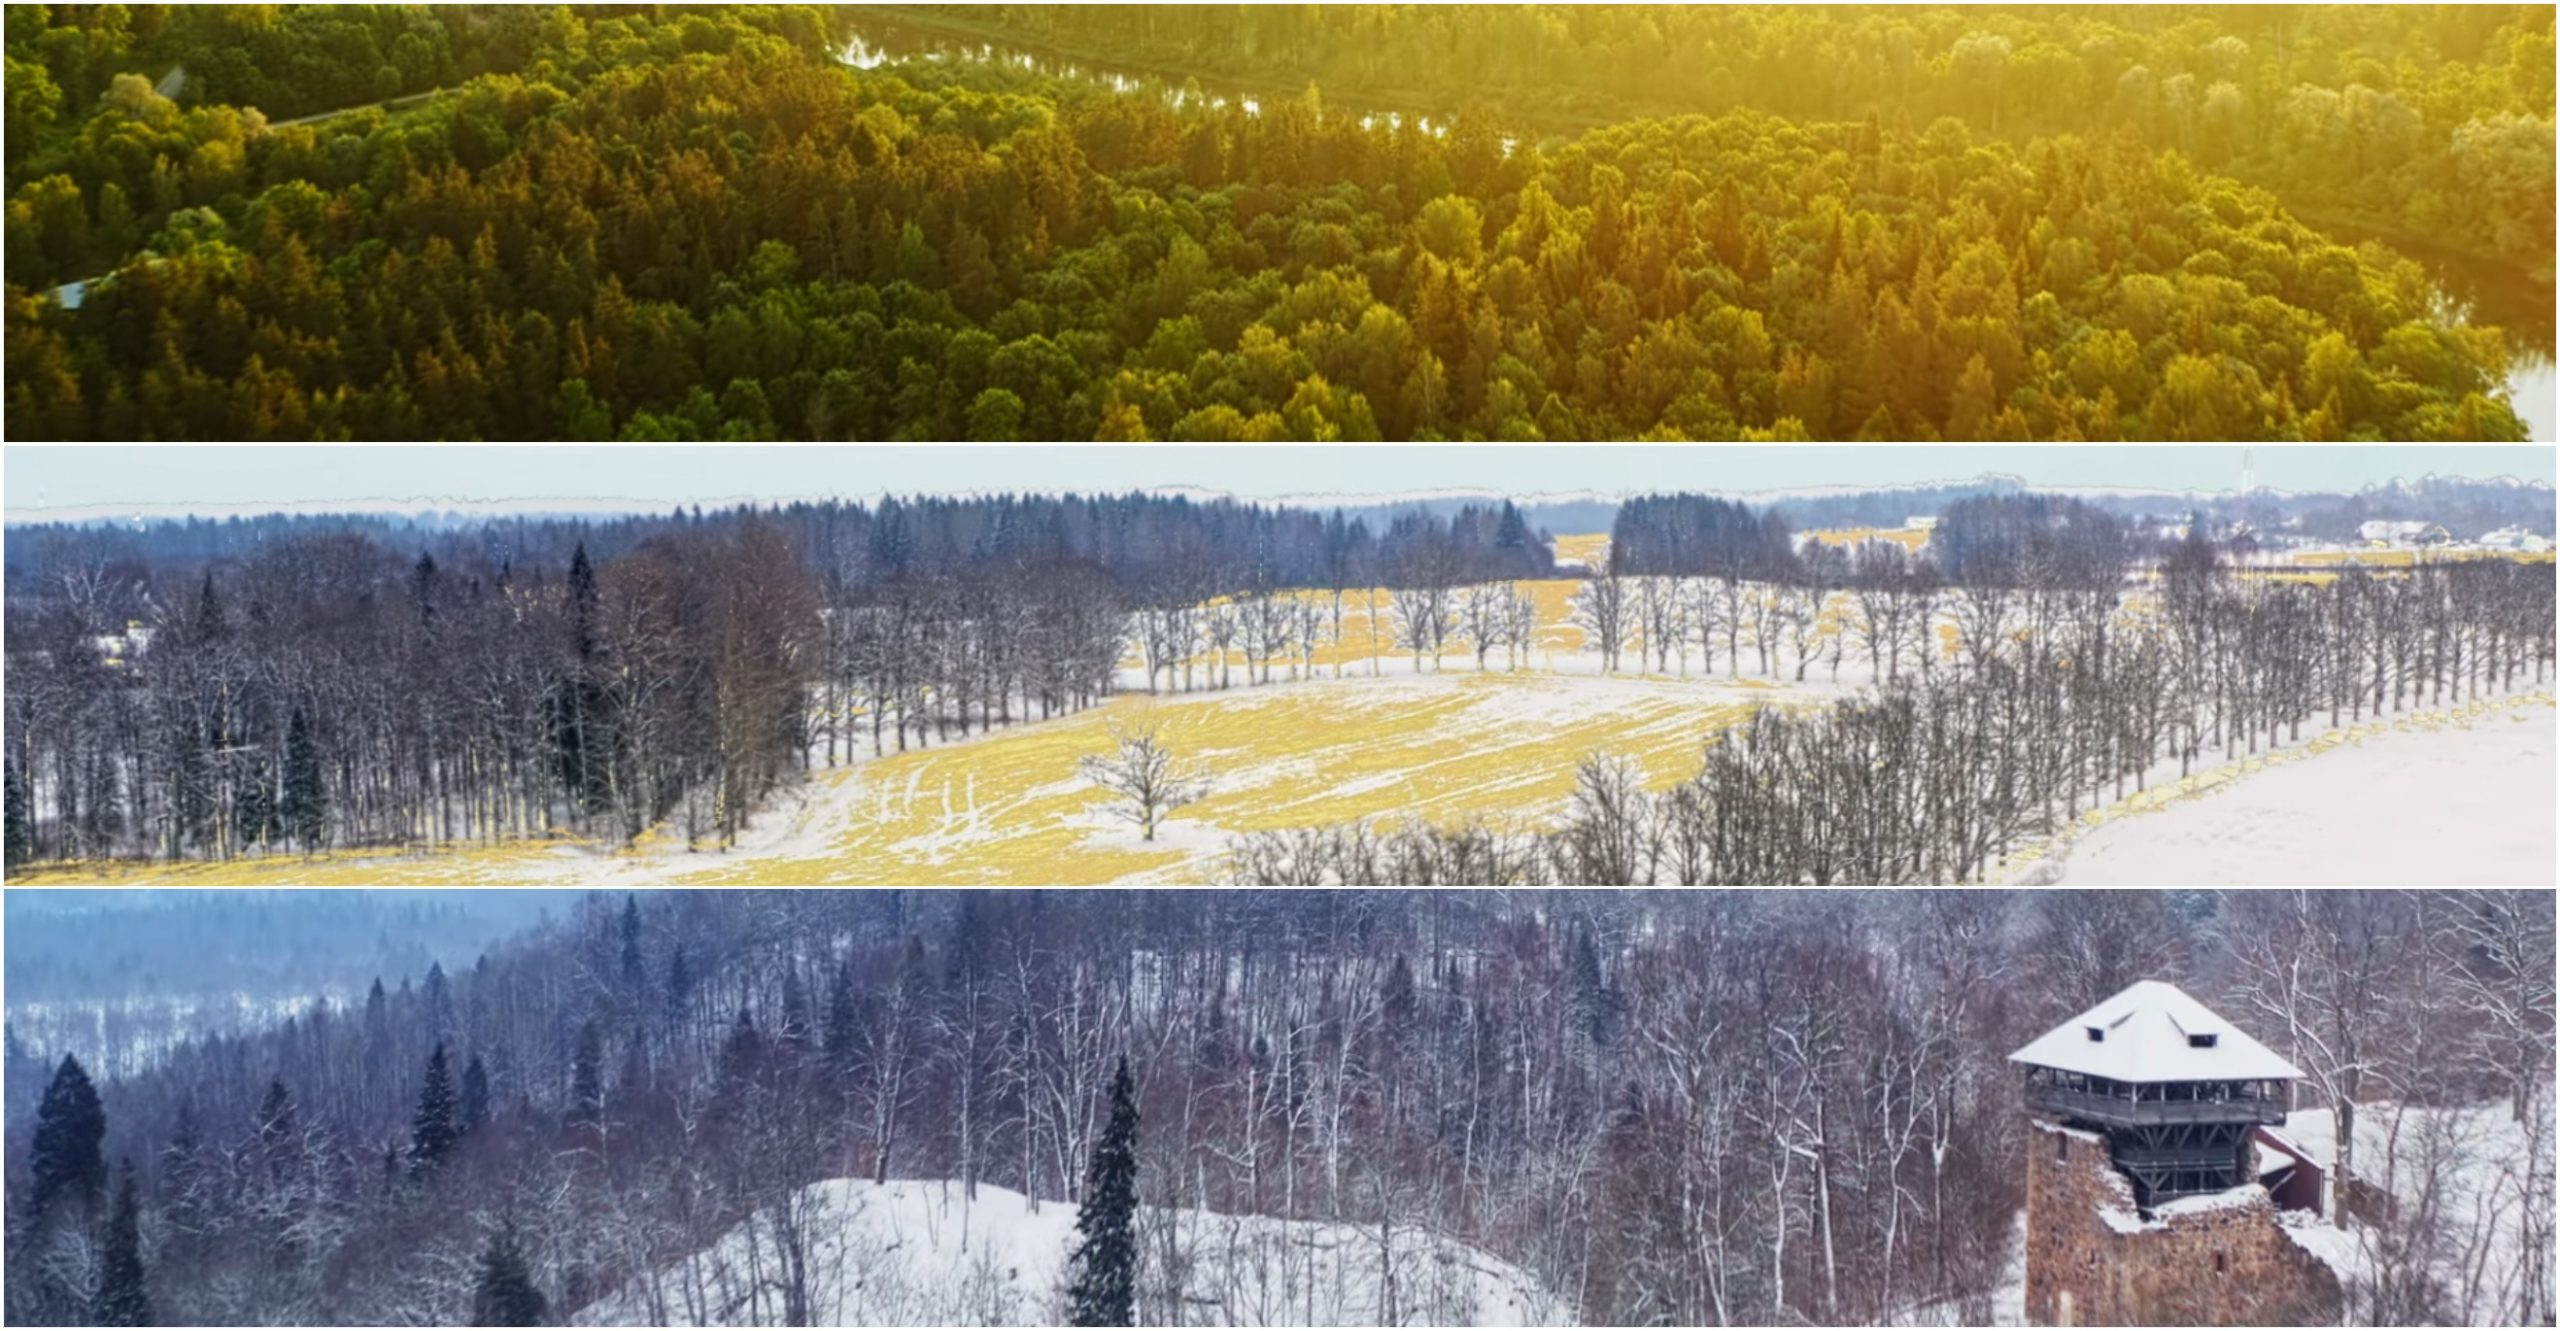 Video ‘Landscapes of Change’ chuyển giao các mùa tuyệt đẹp được quay bằng Mavic 2 Pro